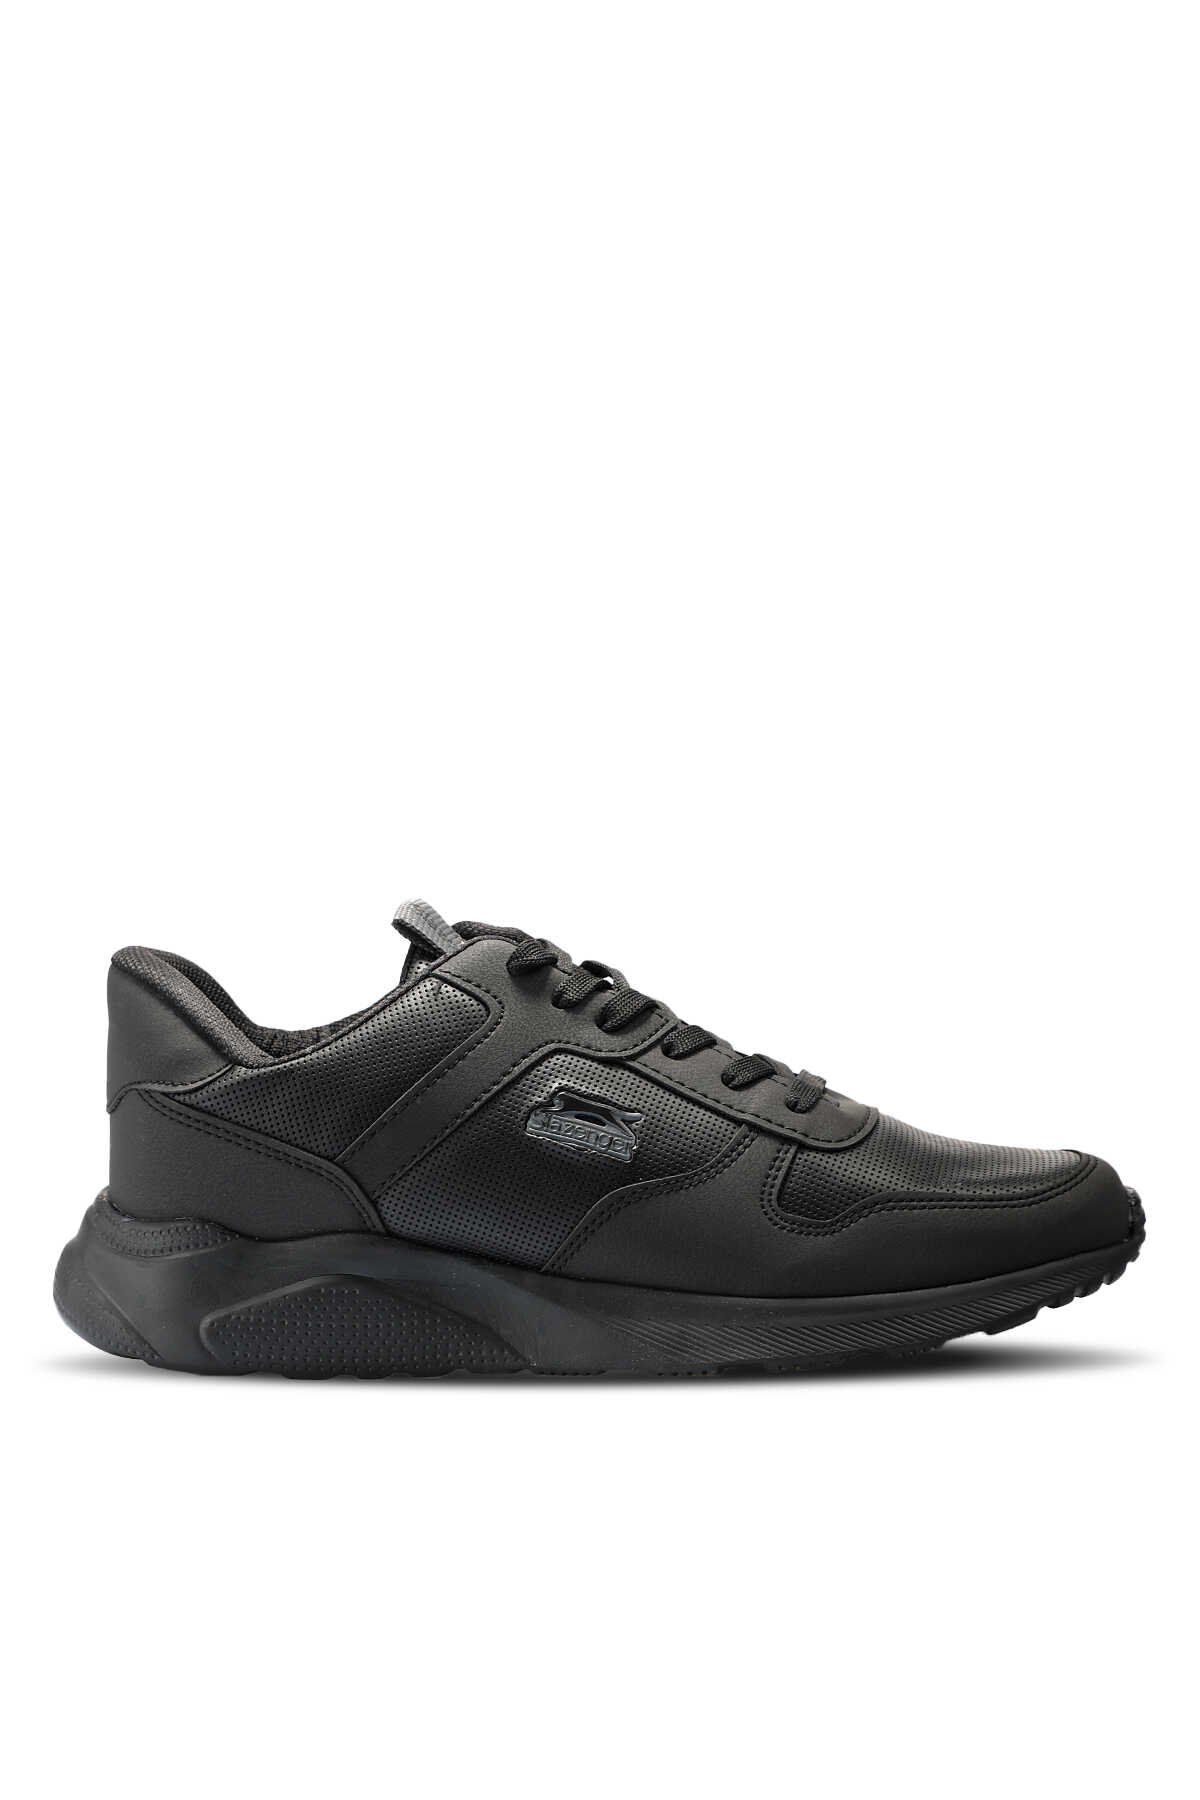 Slazenger - Slazenger ENRICA Sneaker Erkek Ayakkabı Siyah / Siyah